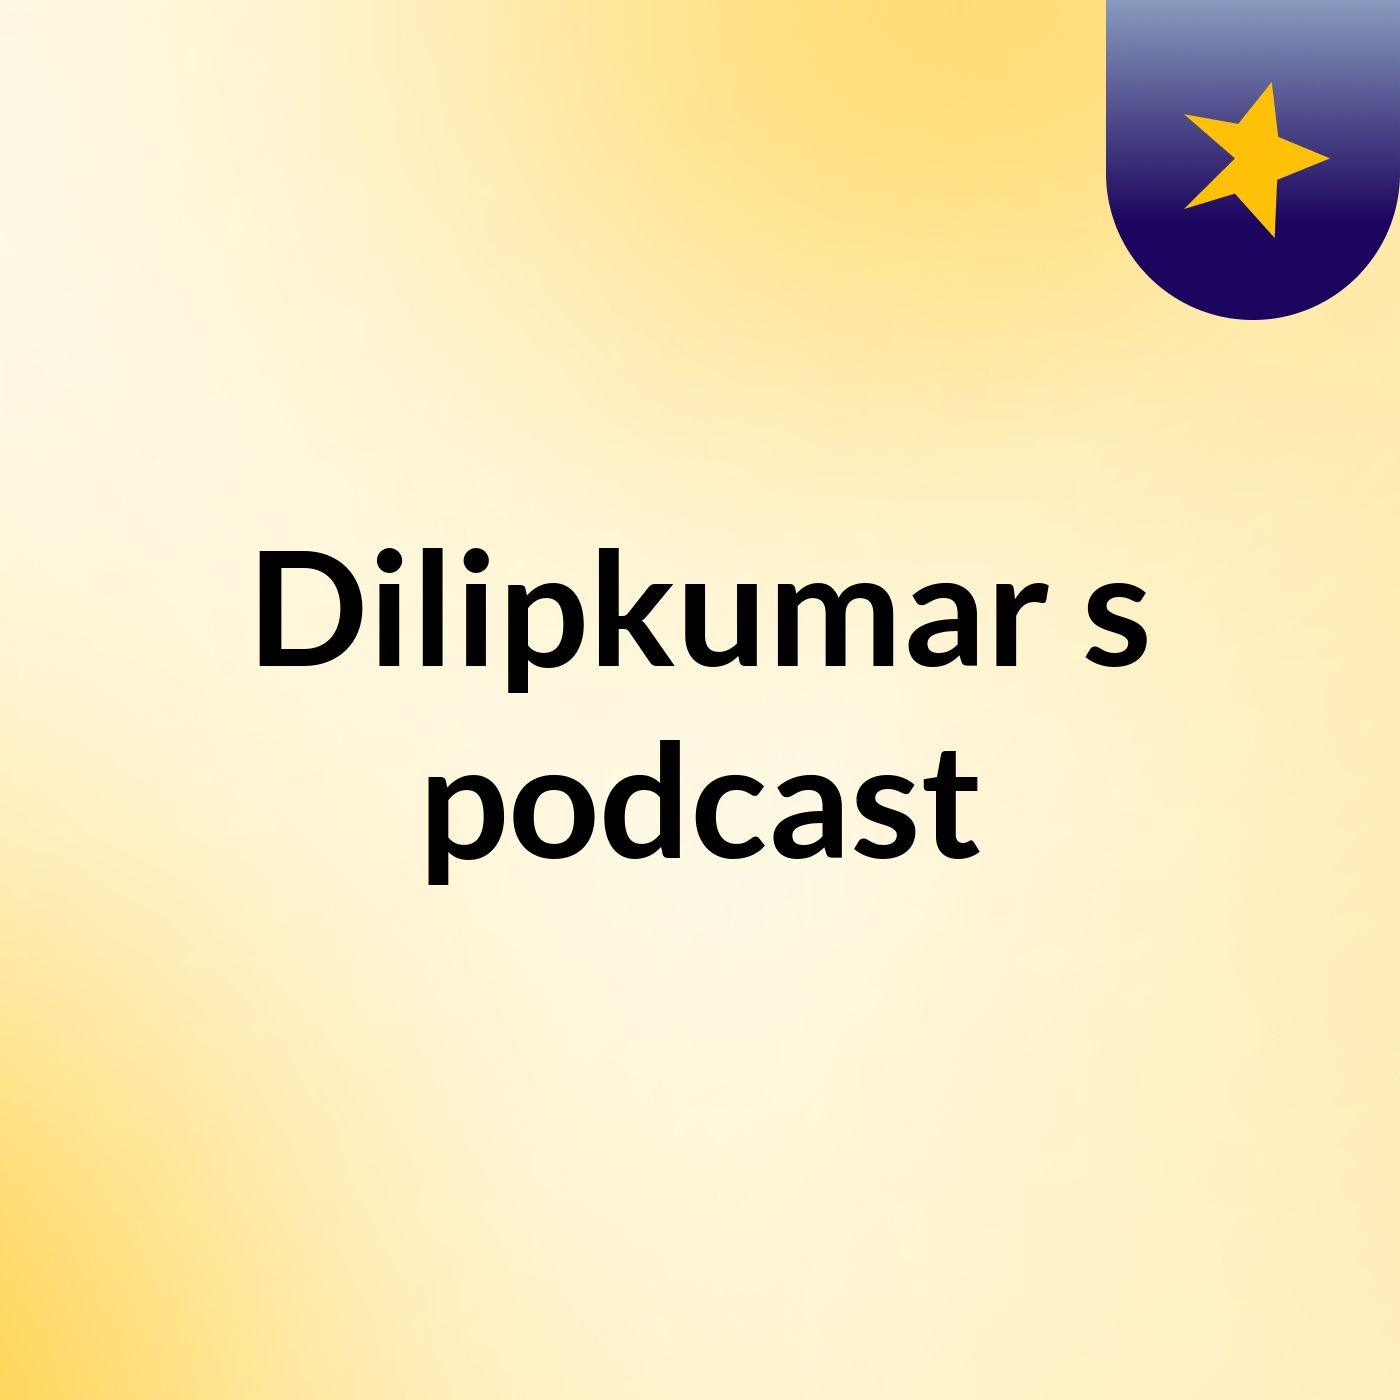 Episode 3 - Dilipkumar's podcast